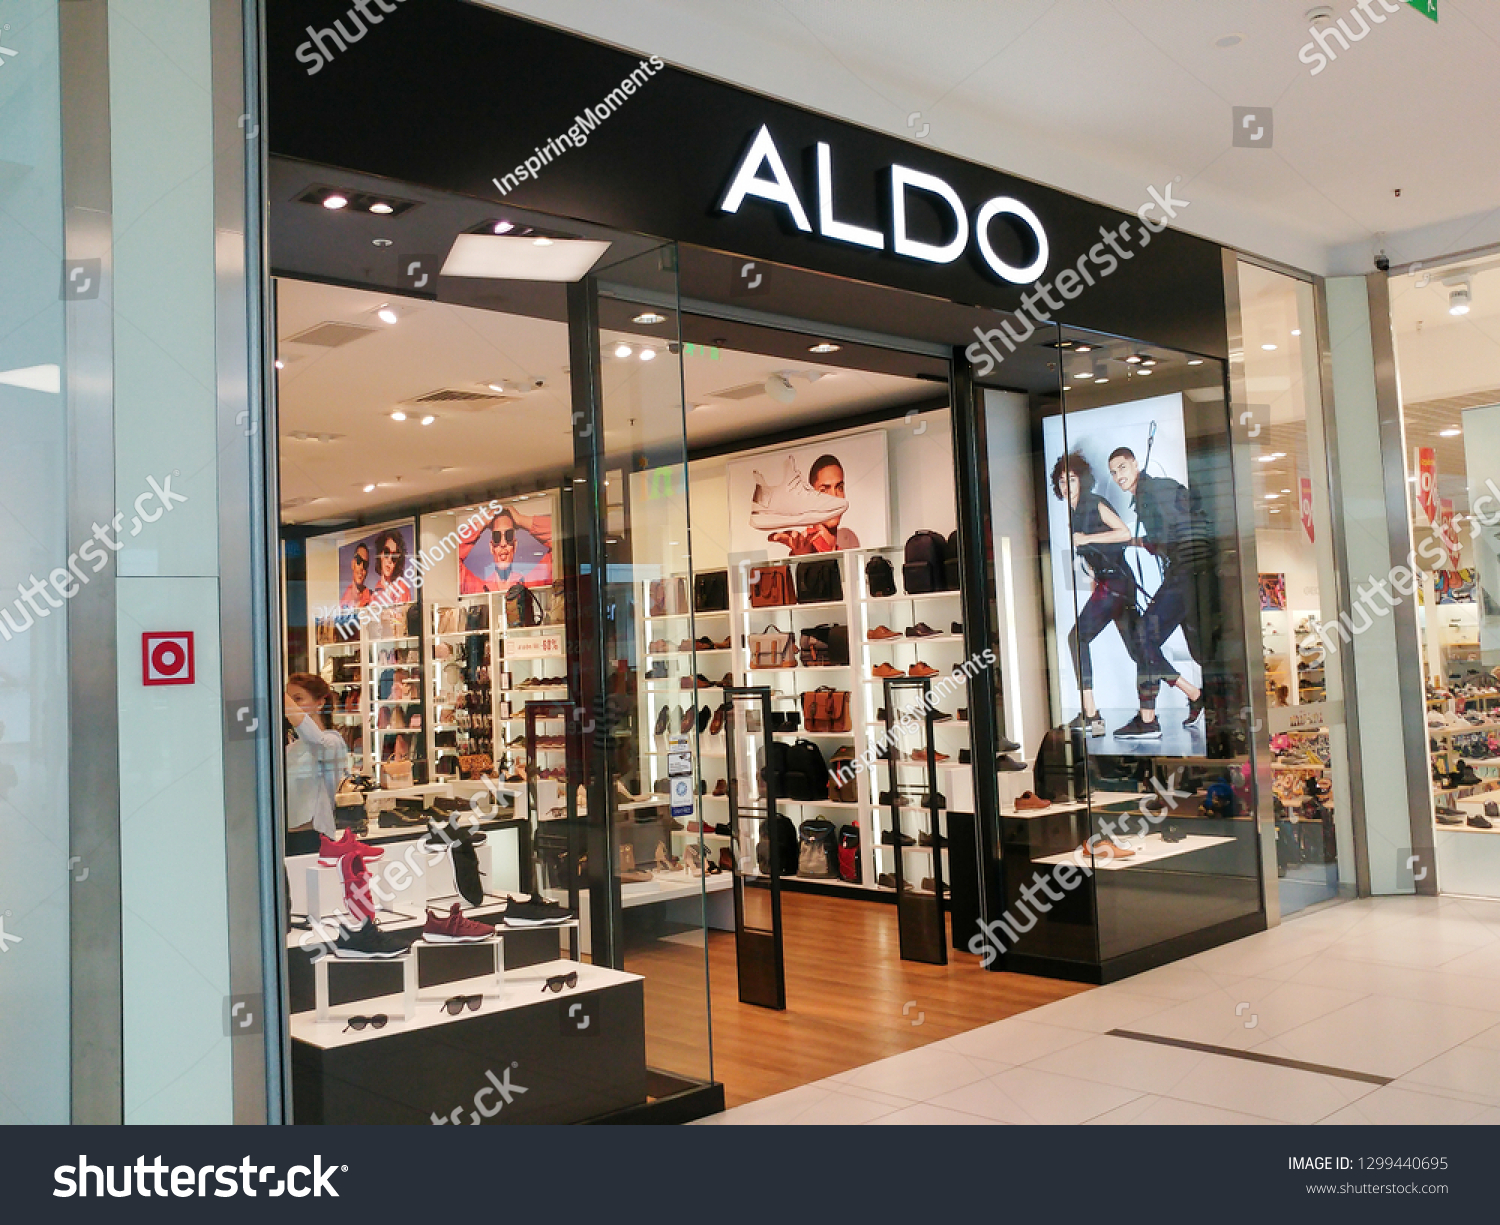 August 202018 Aldo Shoes Photo Now) 1299440695